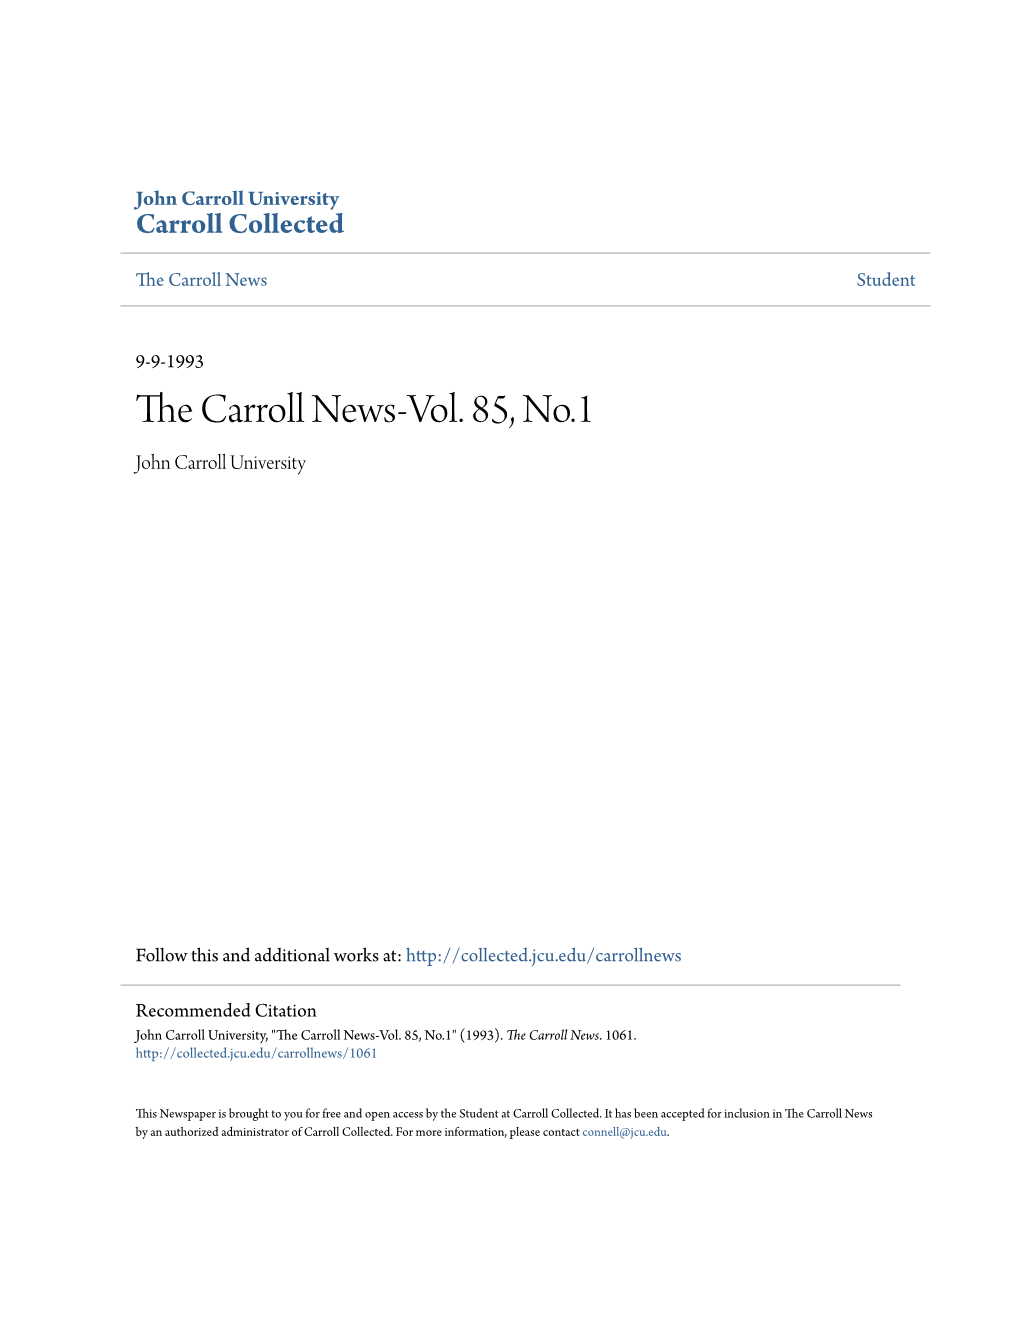 The Carroll News-Vol. 85, No.1